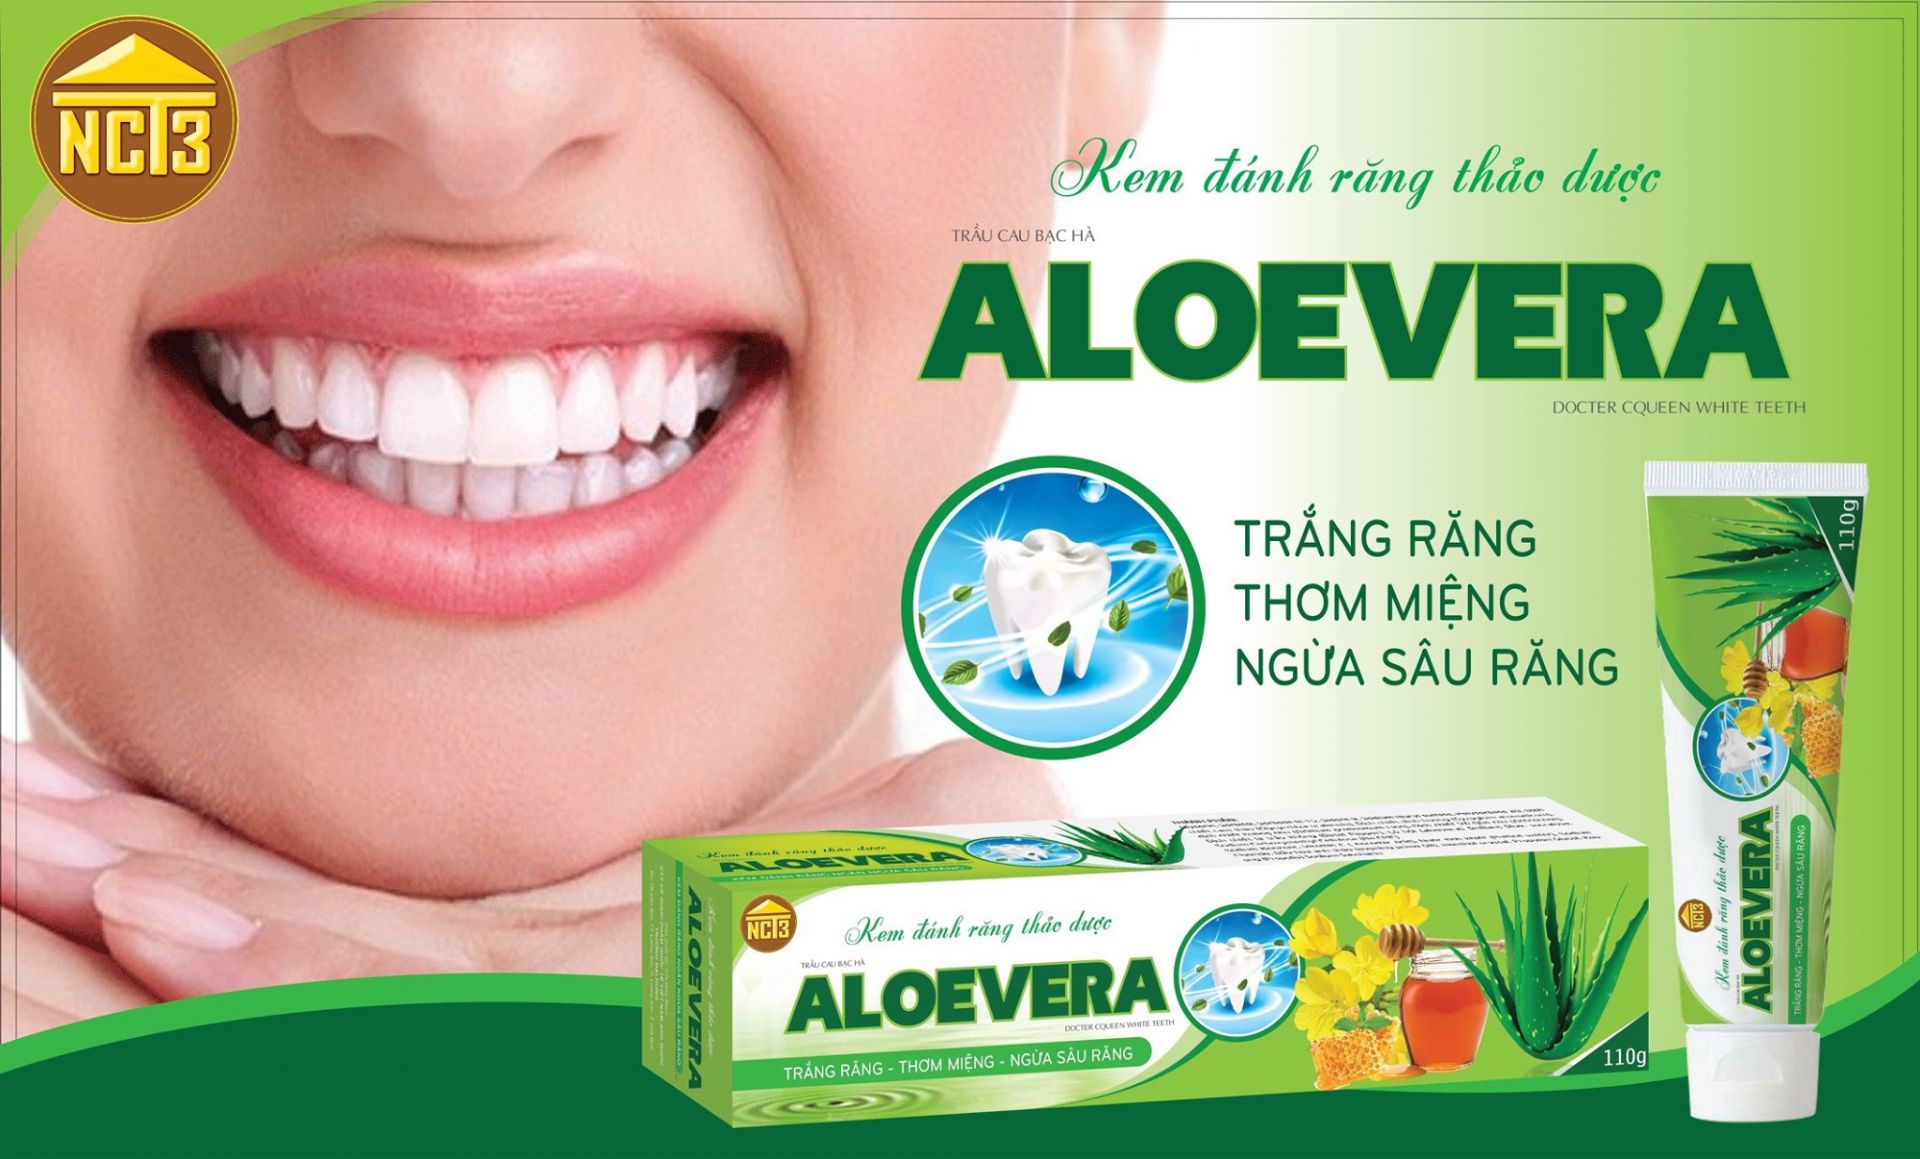 Kem đánh răng thảo dược Aloevera